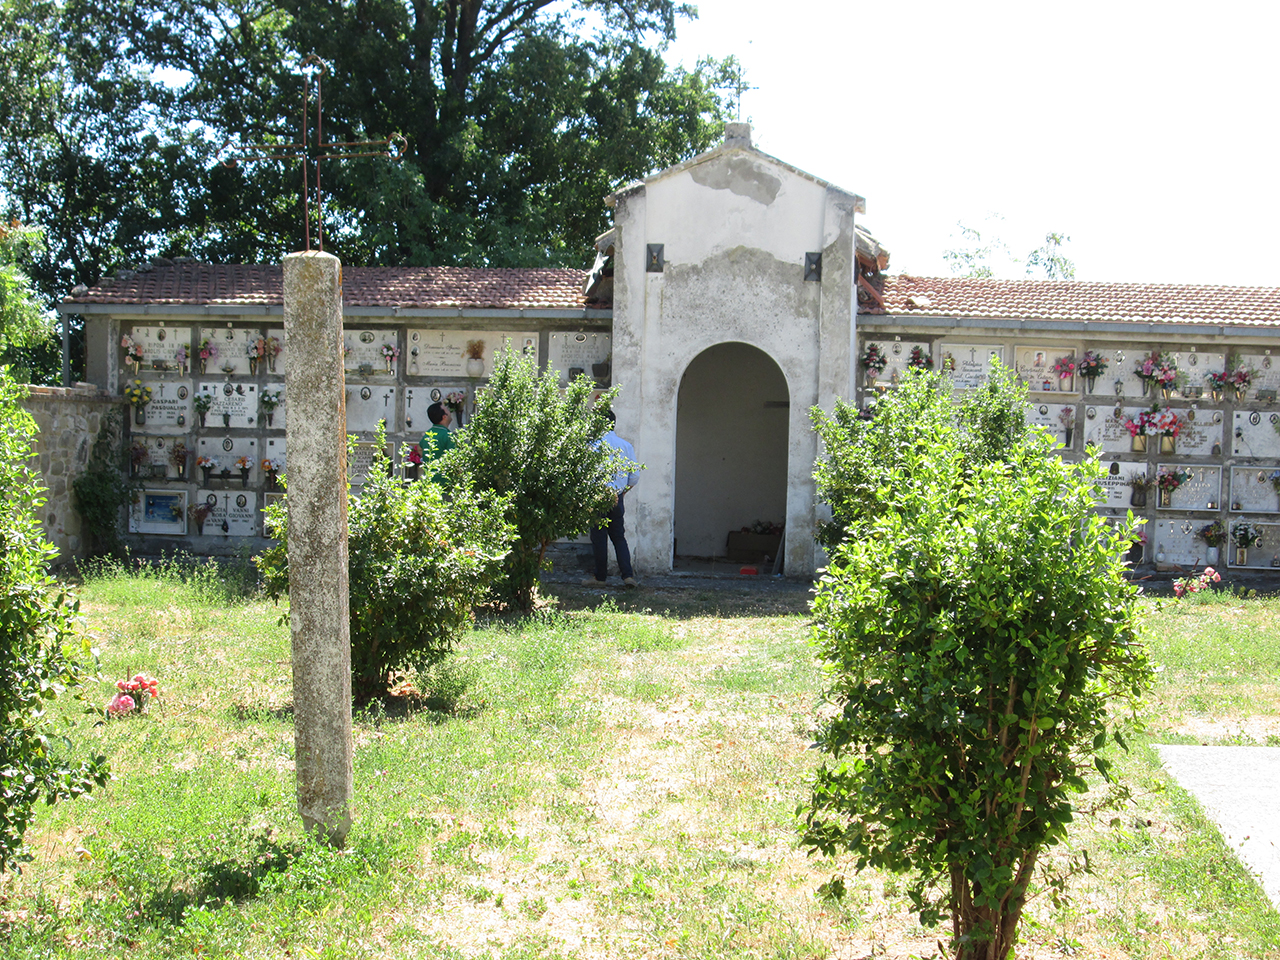 Cimitero di Vallorano (cimitero, pubblico) - Venarotta (AP)  (XX)